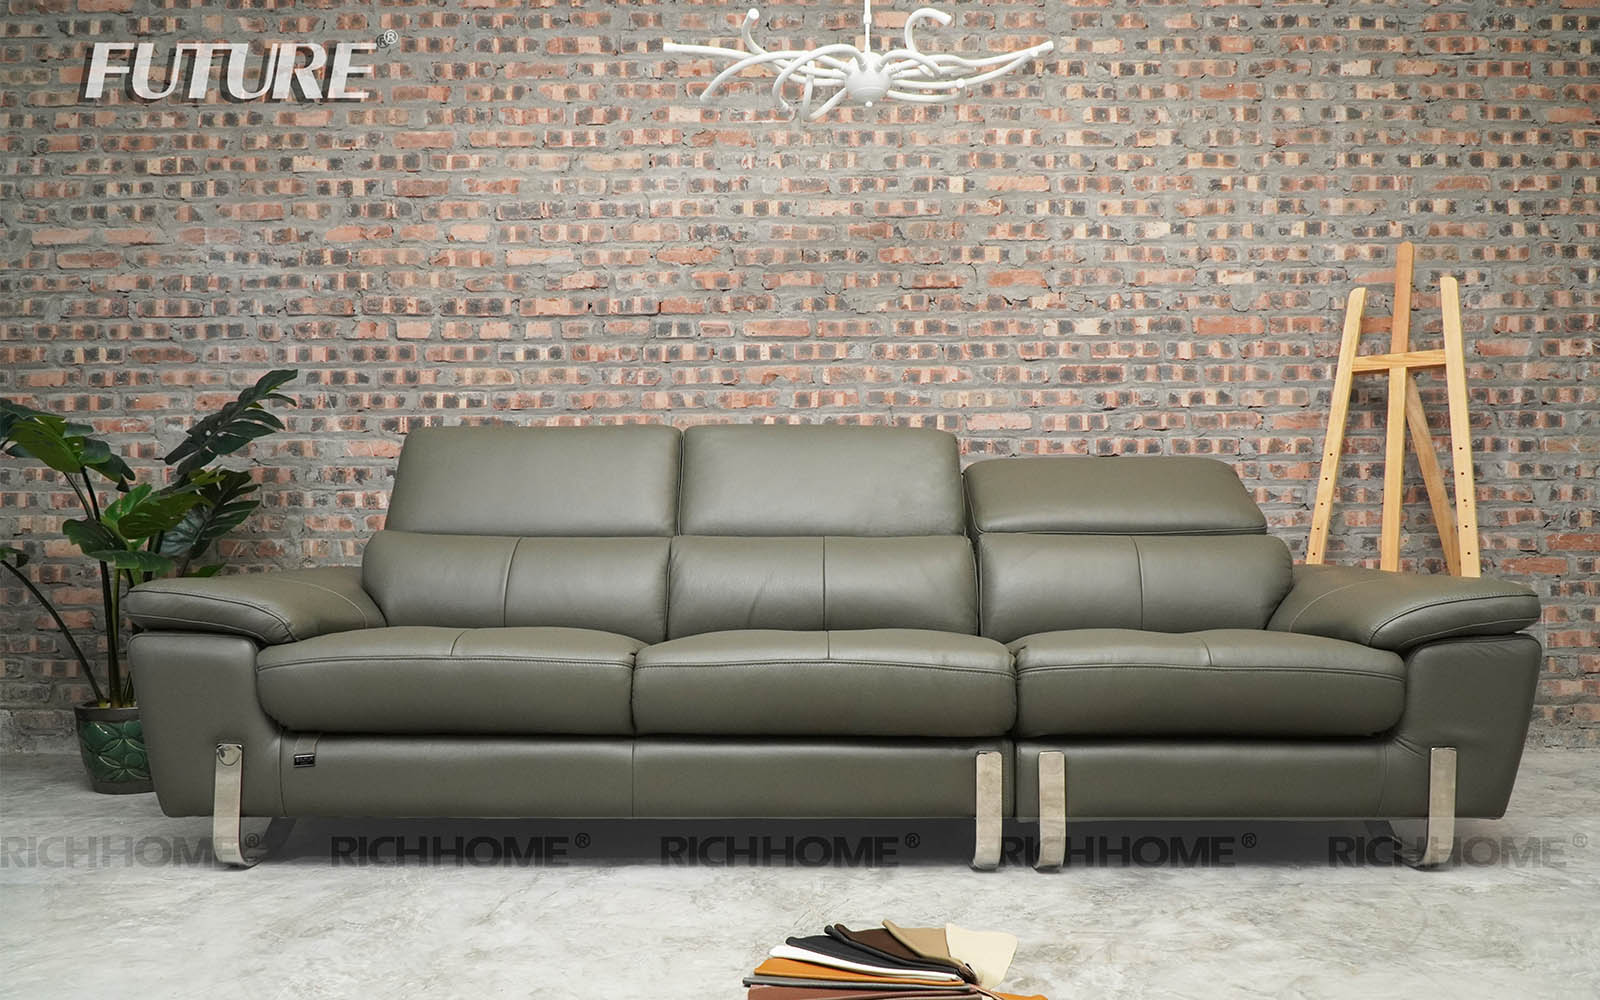 Top 10 mẫu ghế sofa màu xám lông chuột cho phòng khách hiện đại - Ảnh 5